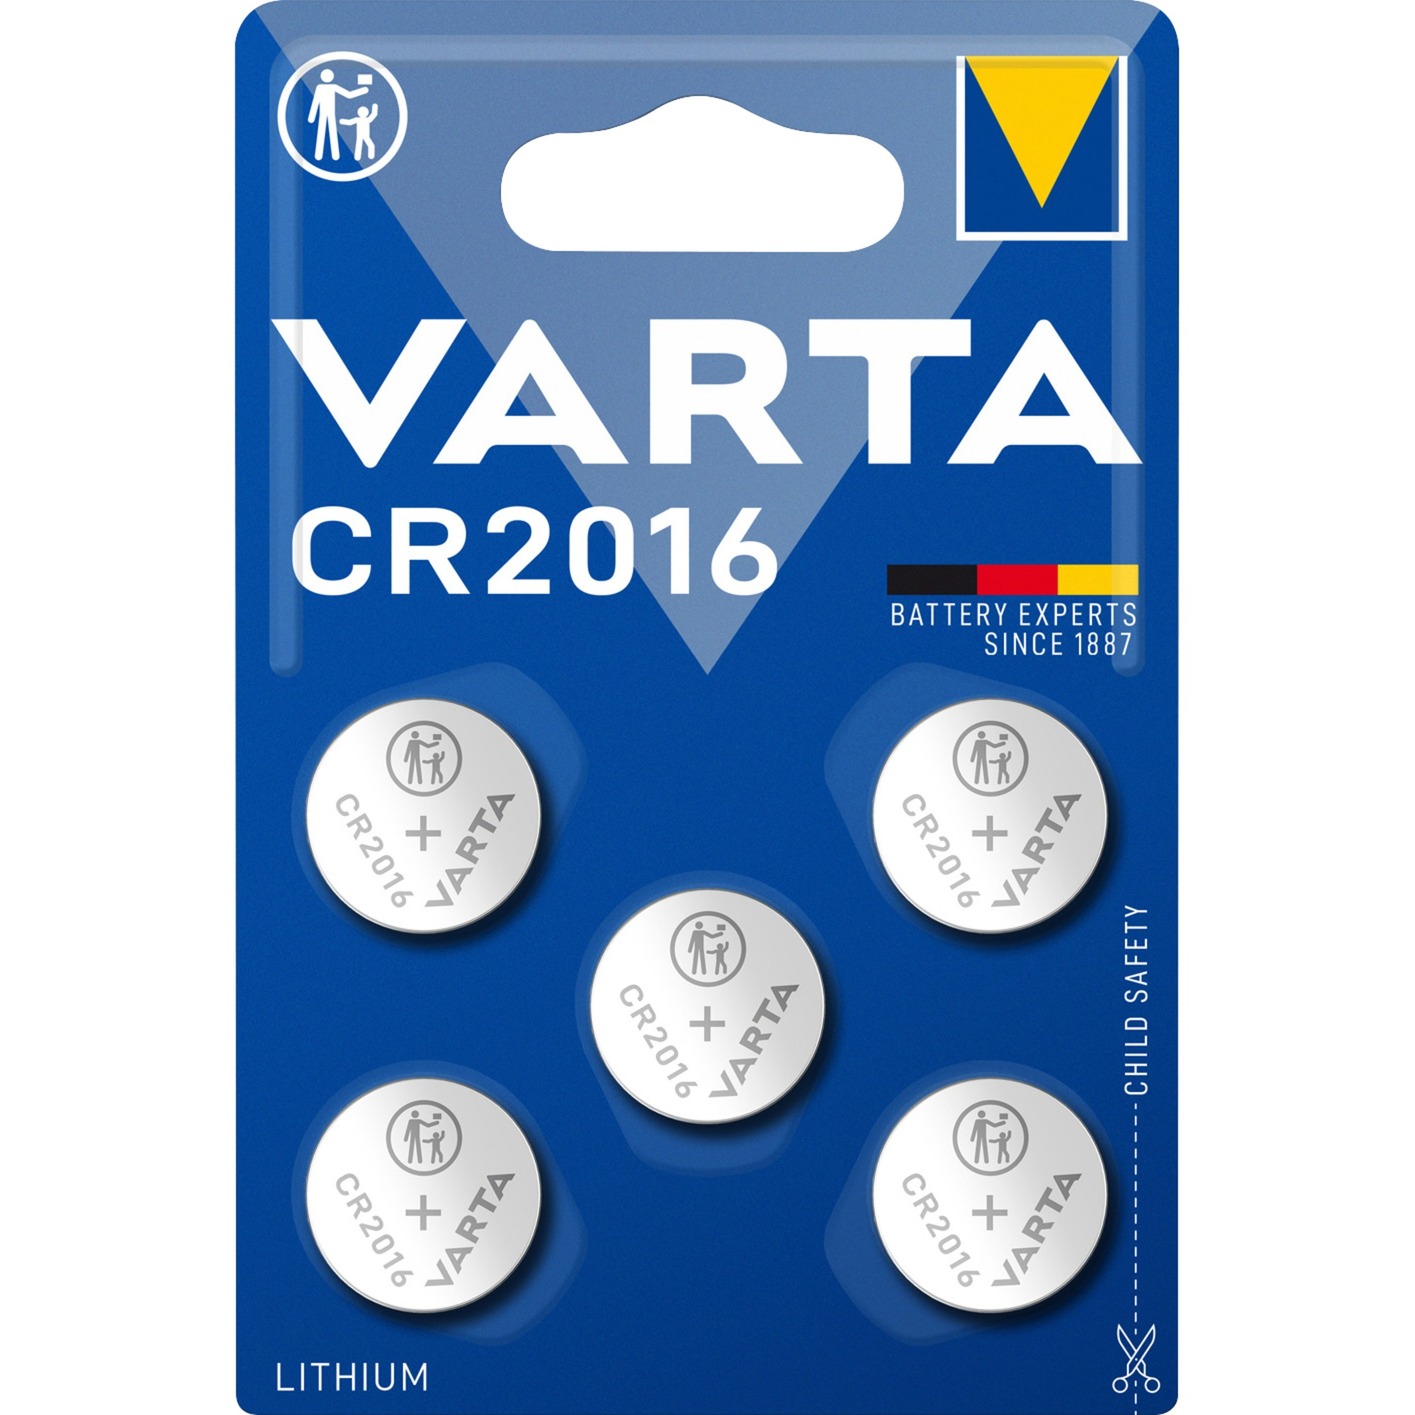 LITHIUM Coin CR2016, Batterie von Varta